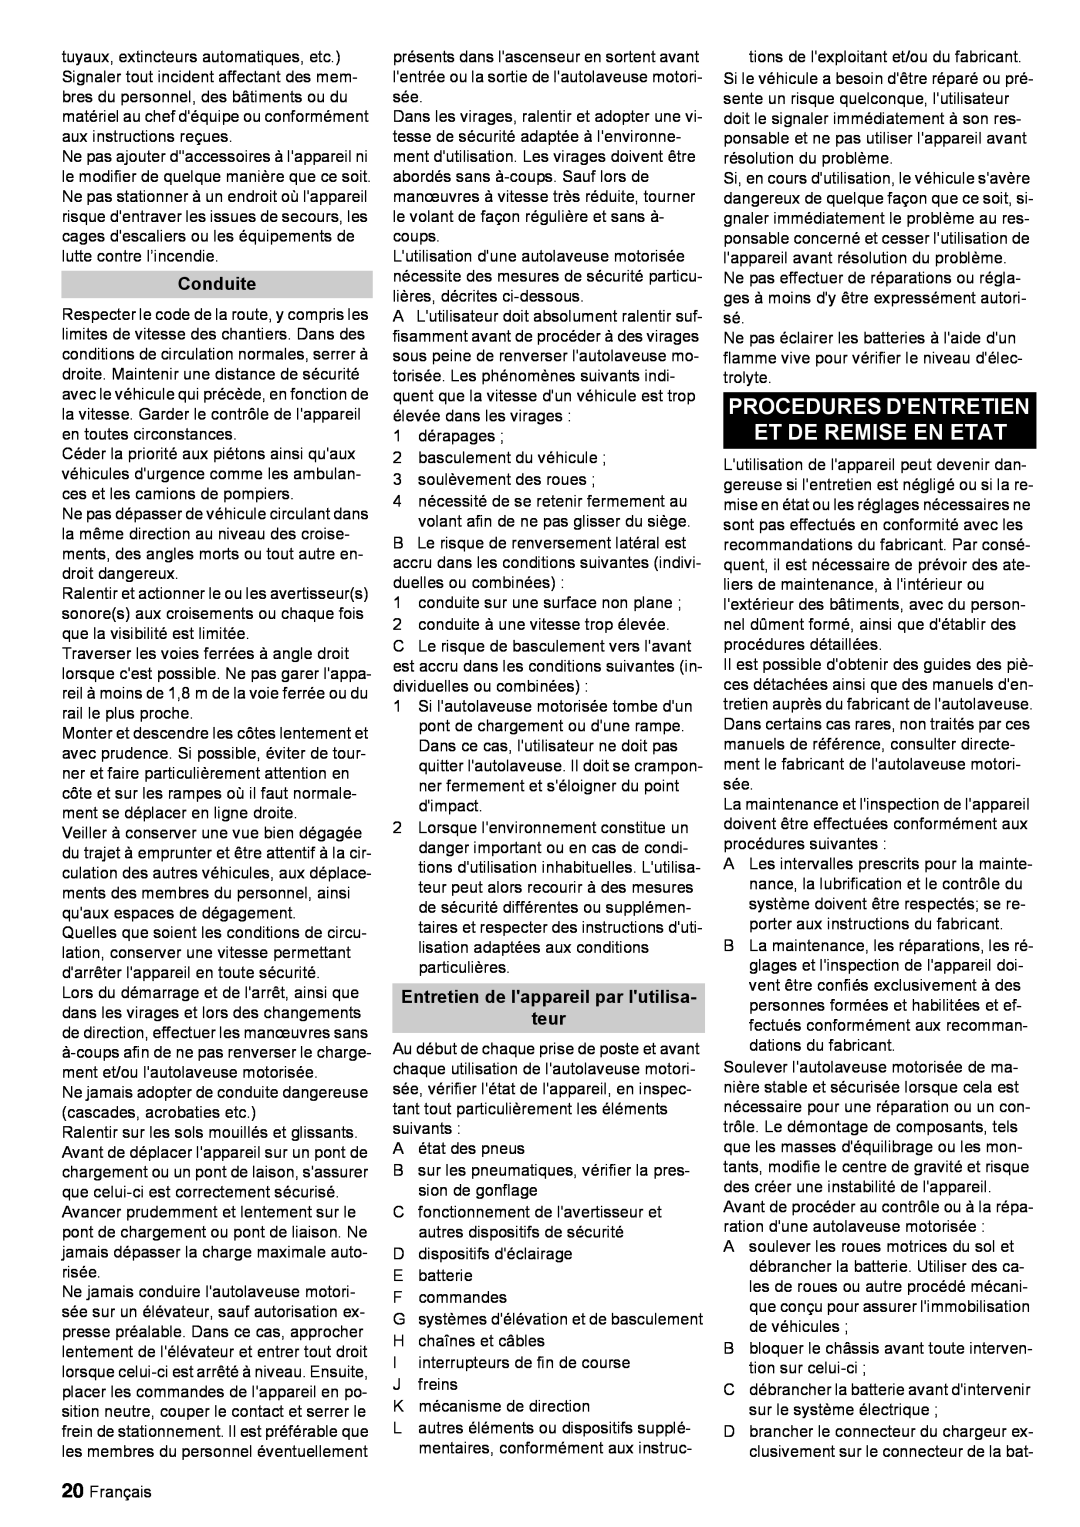 Windsor 30 SP manual Procedures Dentretien Et De Remise En Etat, Conduite, Entretien de lappareil par lutilisa teur 